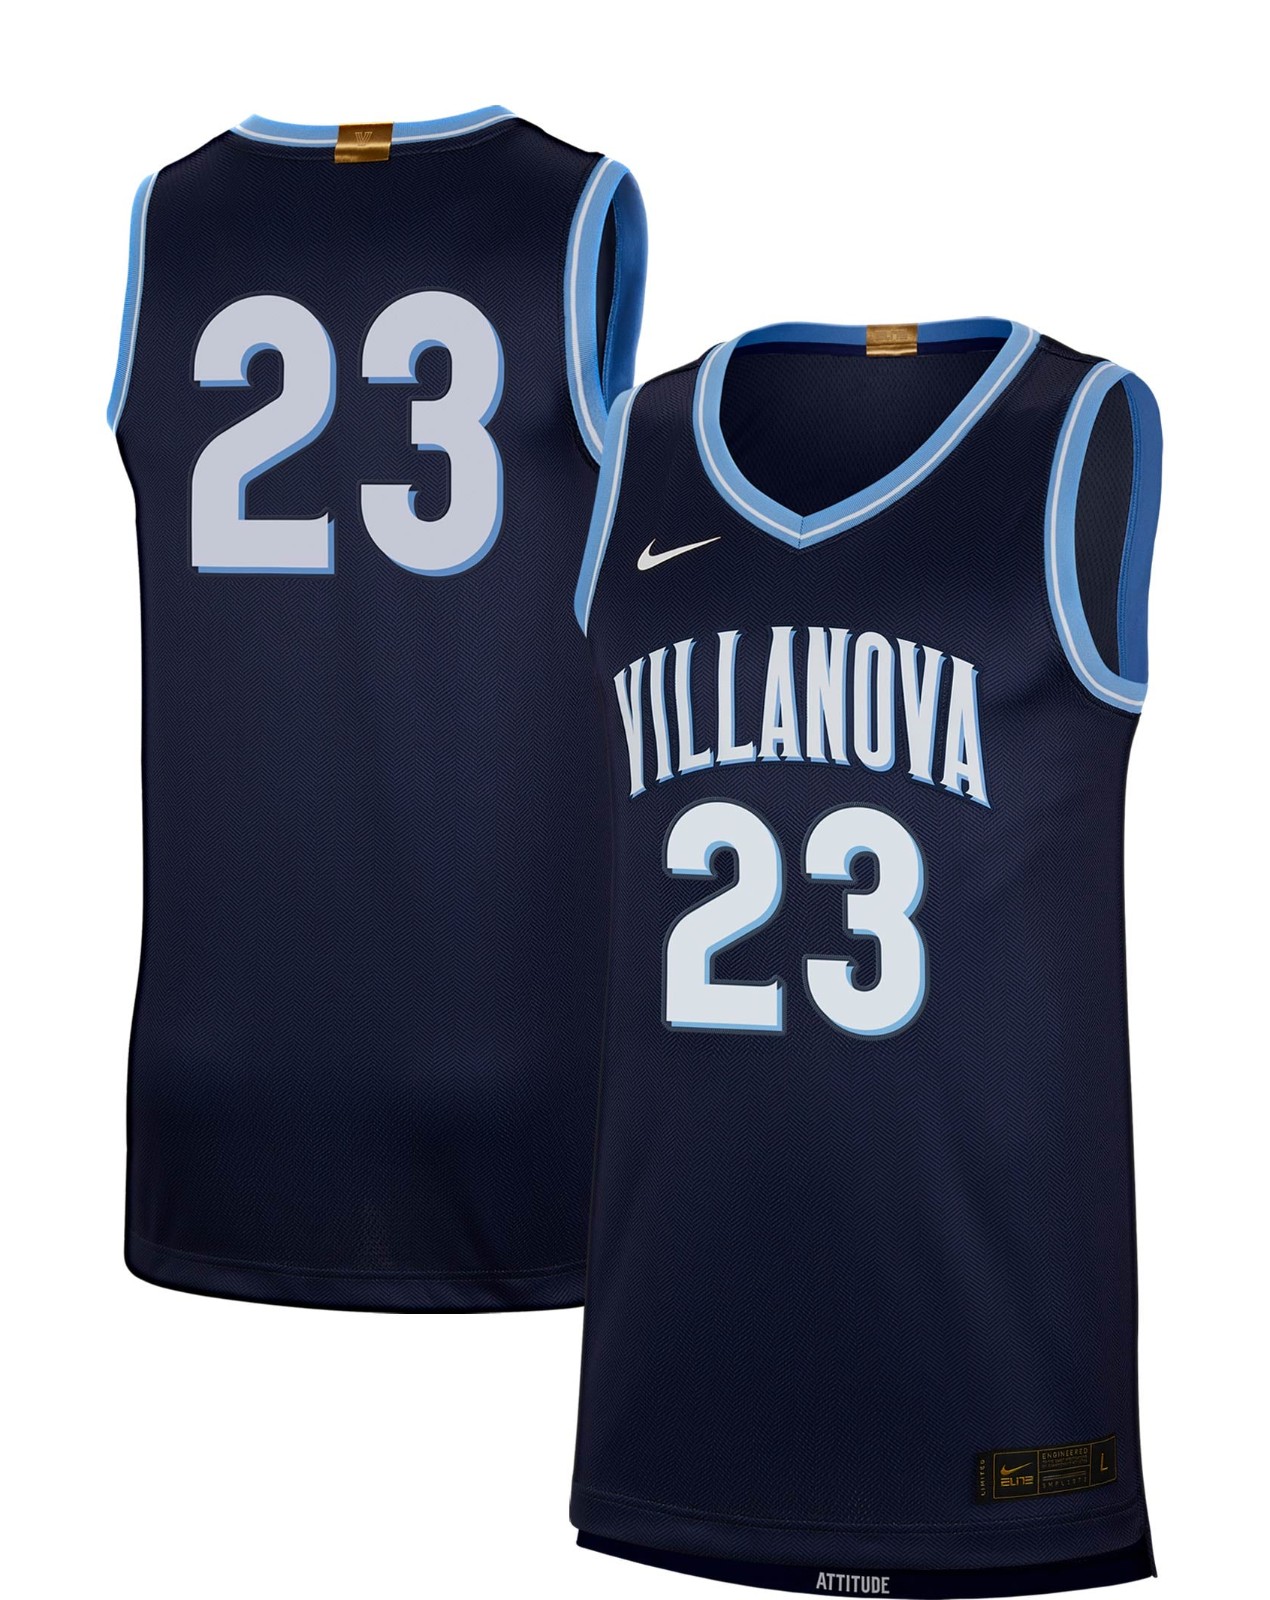 villanova basketball uniforms 2022